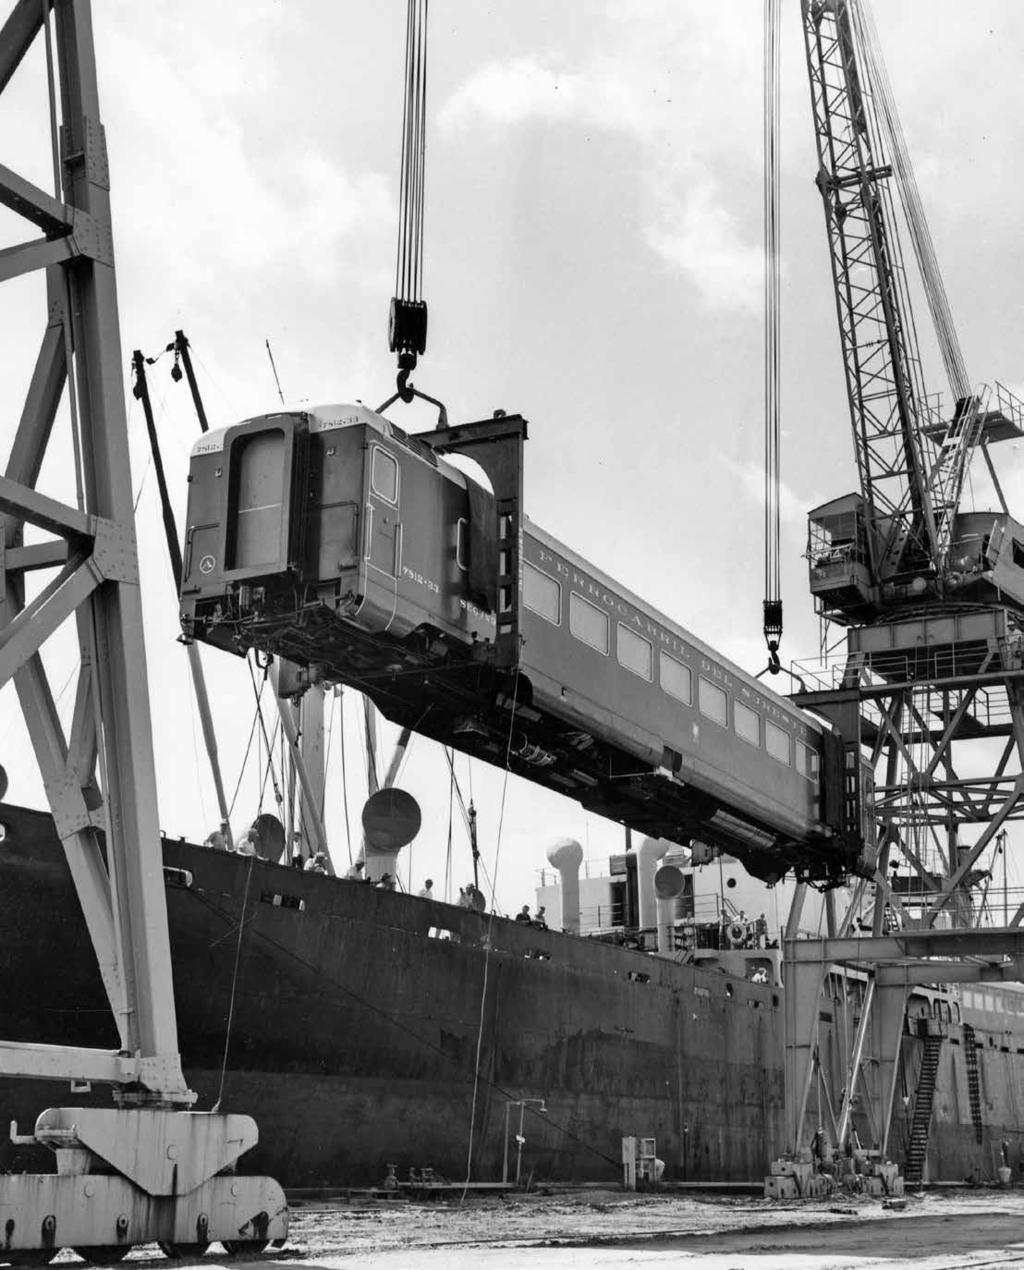 Even trains can travel by sea. Crane operators unload a railroad car for the Mexican railroad company Ferrocarril del Sureste, circa 1950s.